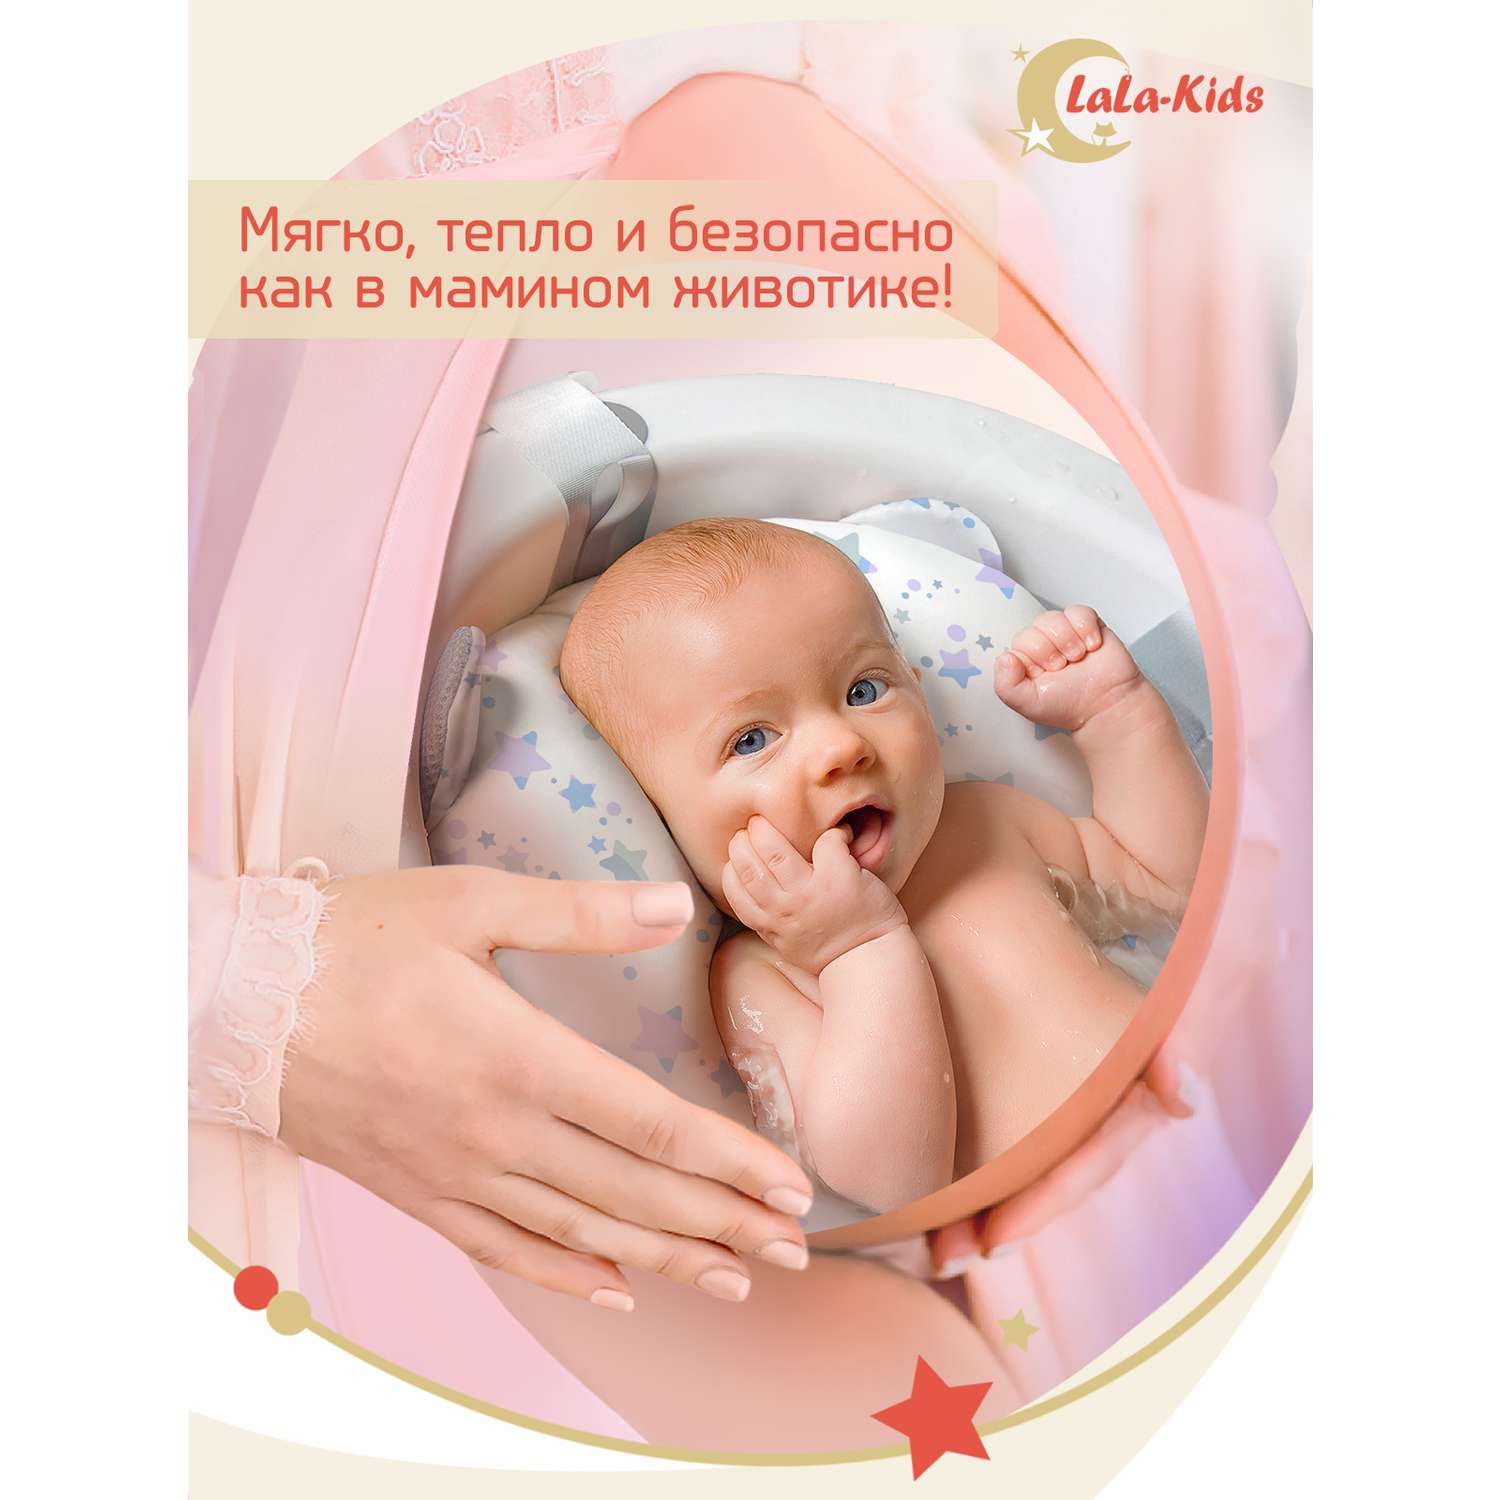 Складная ванночка LaLa-Kids для купания новорожденных с термометром и матрасиком в комплекте - фото 14